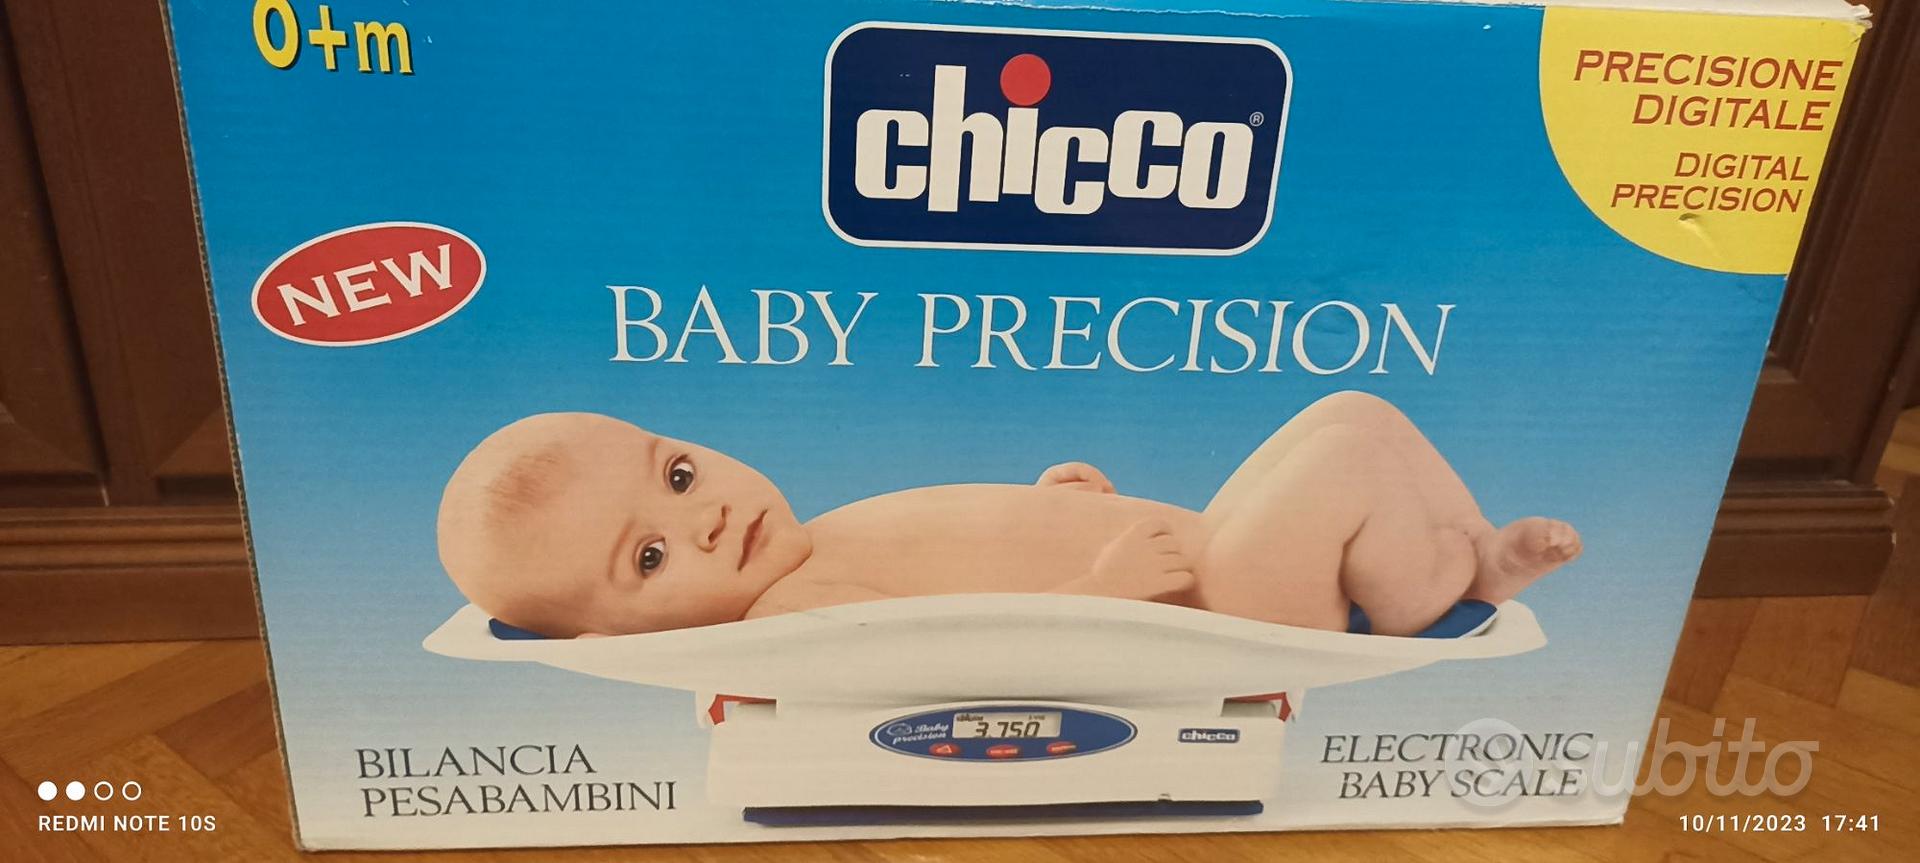 Bilancia neonati chicco - Tutto per i bambini In vendita a Brescia